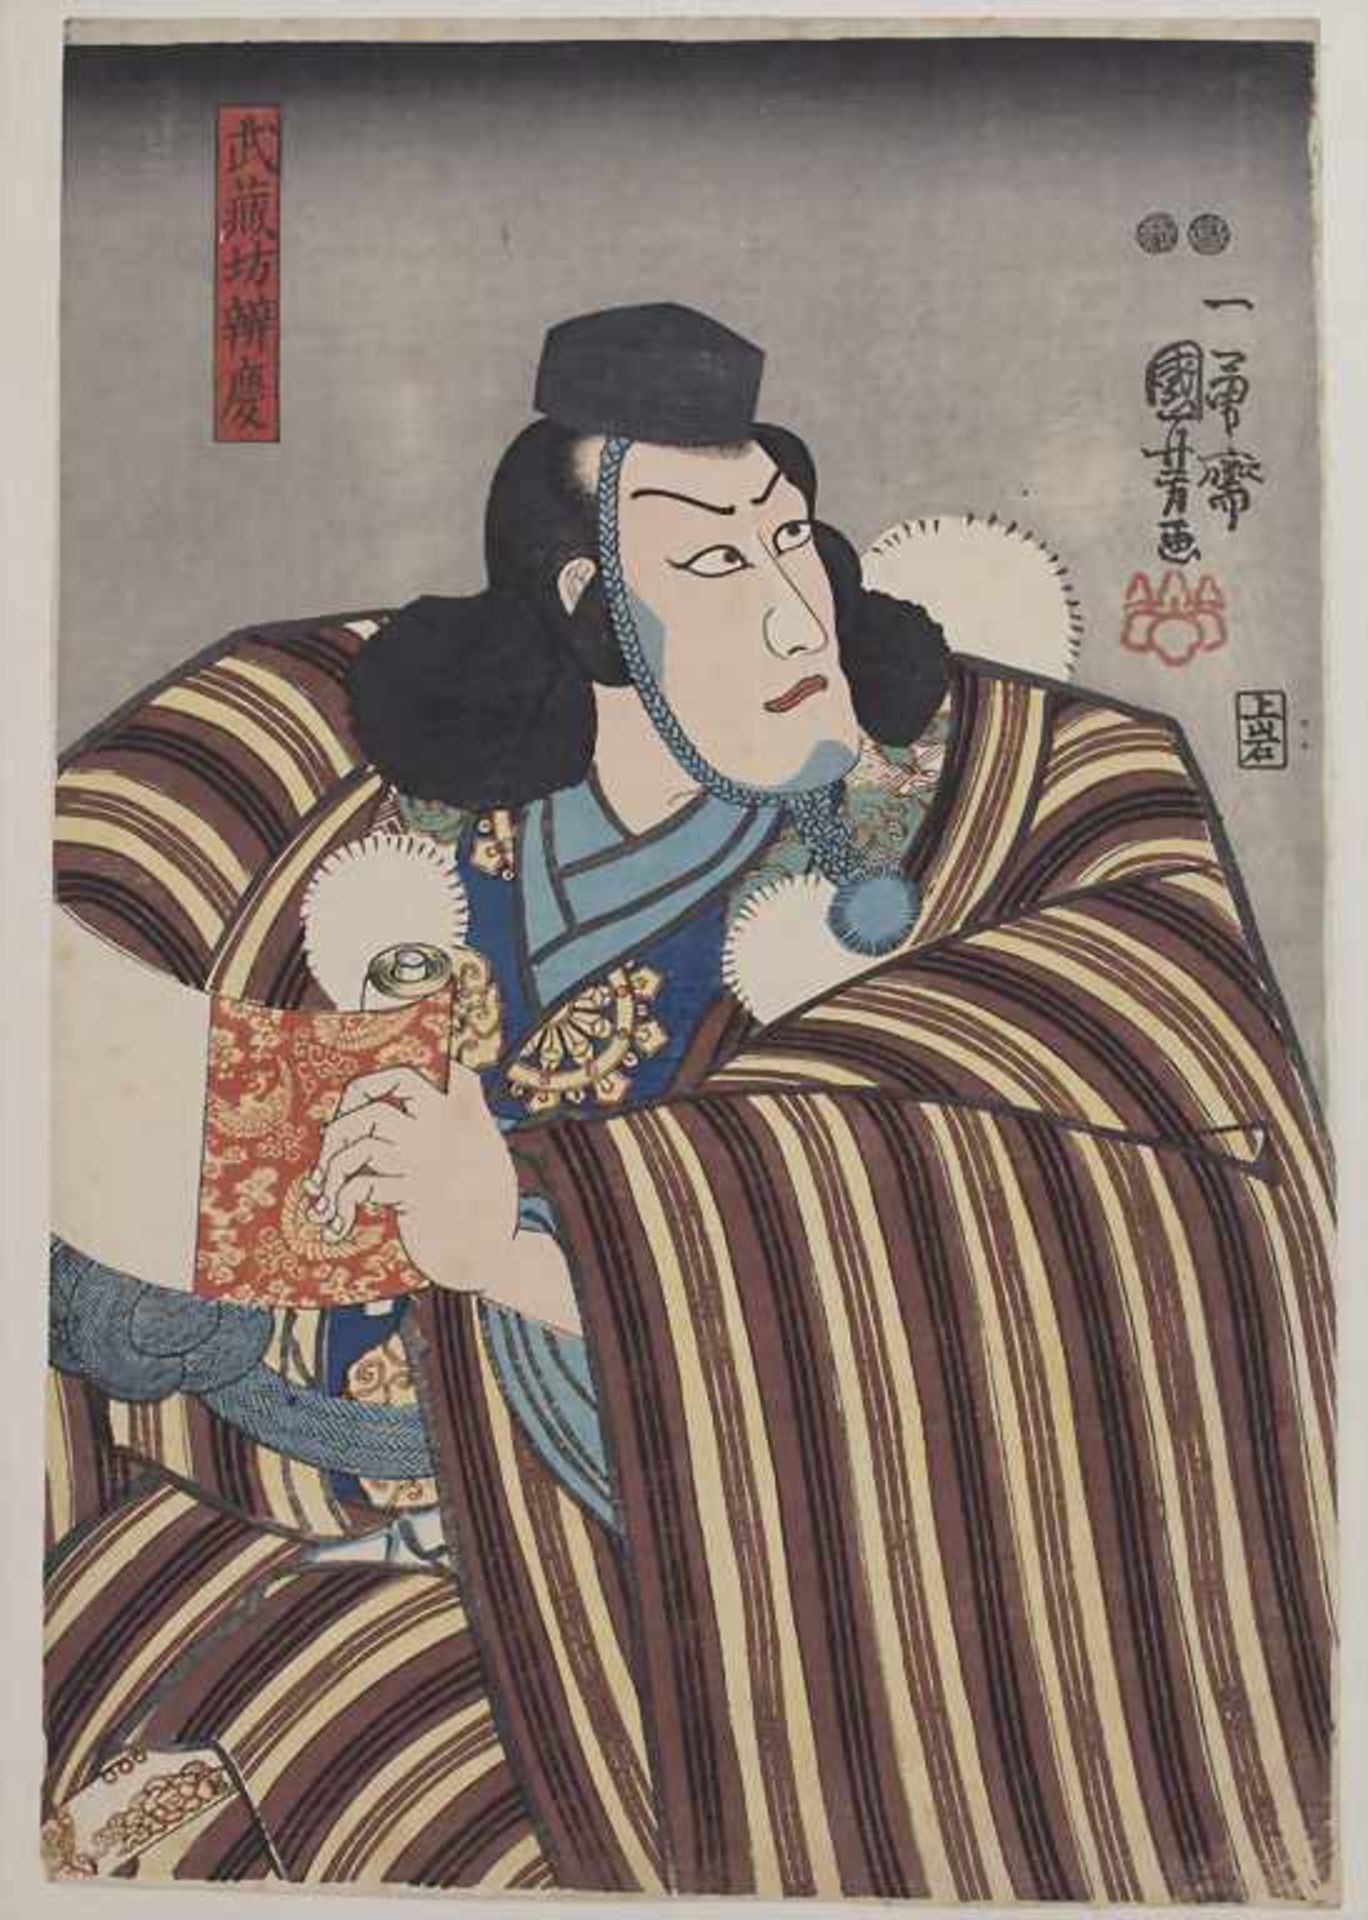 Kuniyoshi Utagawa (1797/98-1861), 'Schauspieler mit Schriftrolle' / 'An actor with scroll'